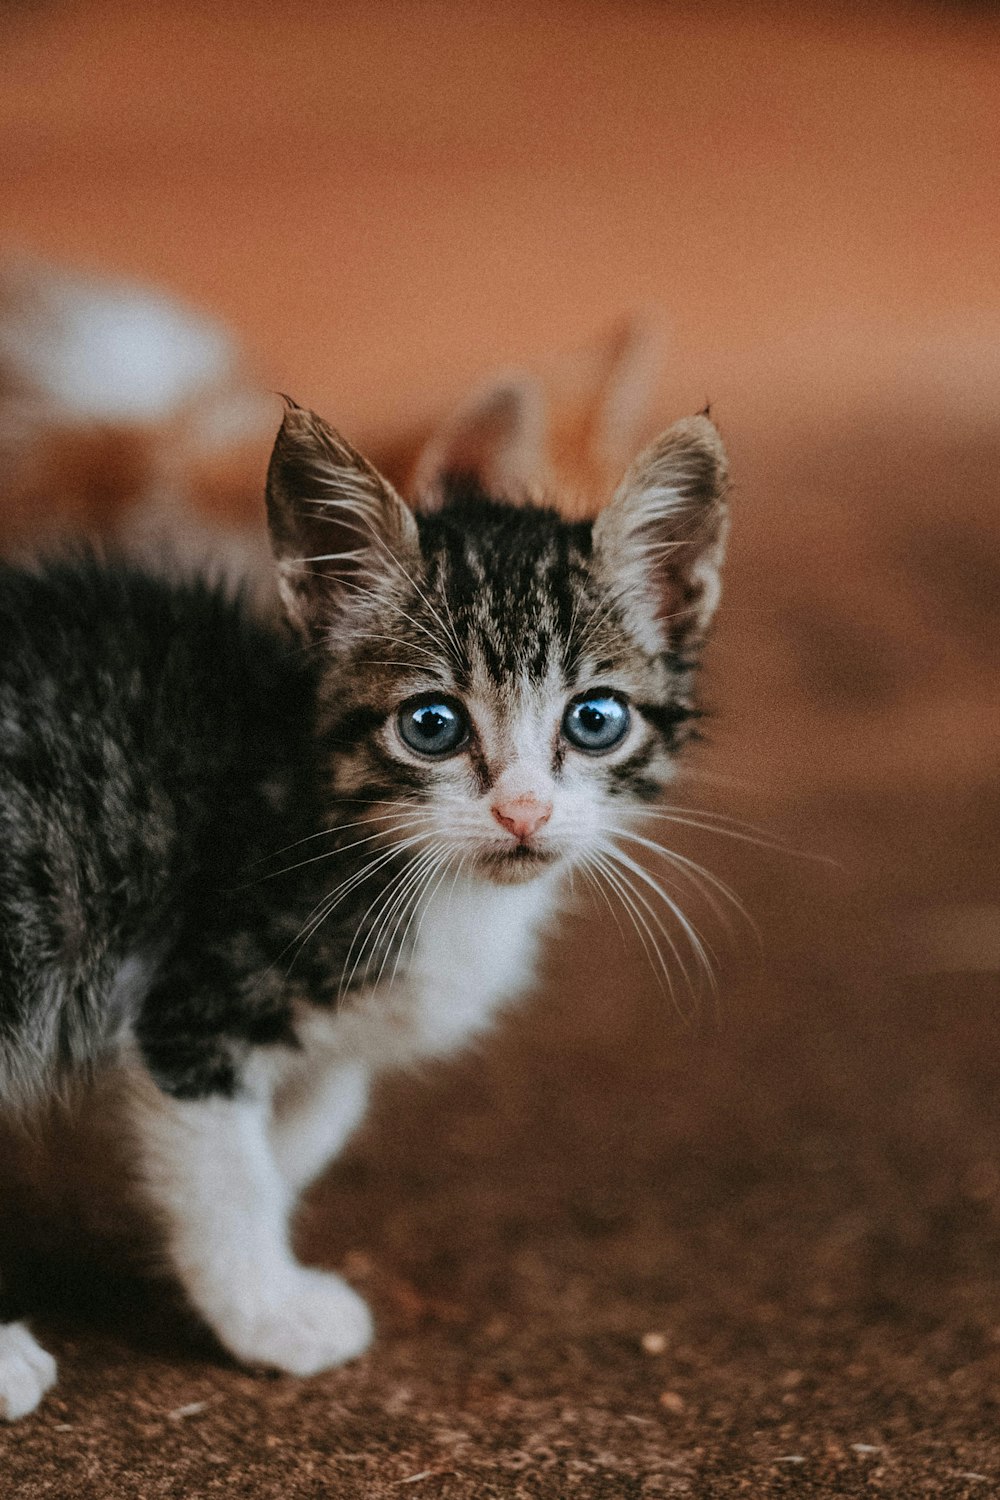 Un pequeño gatito con ojos azules parado en el suelo